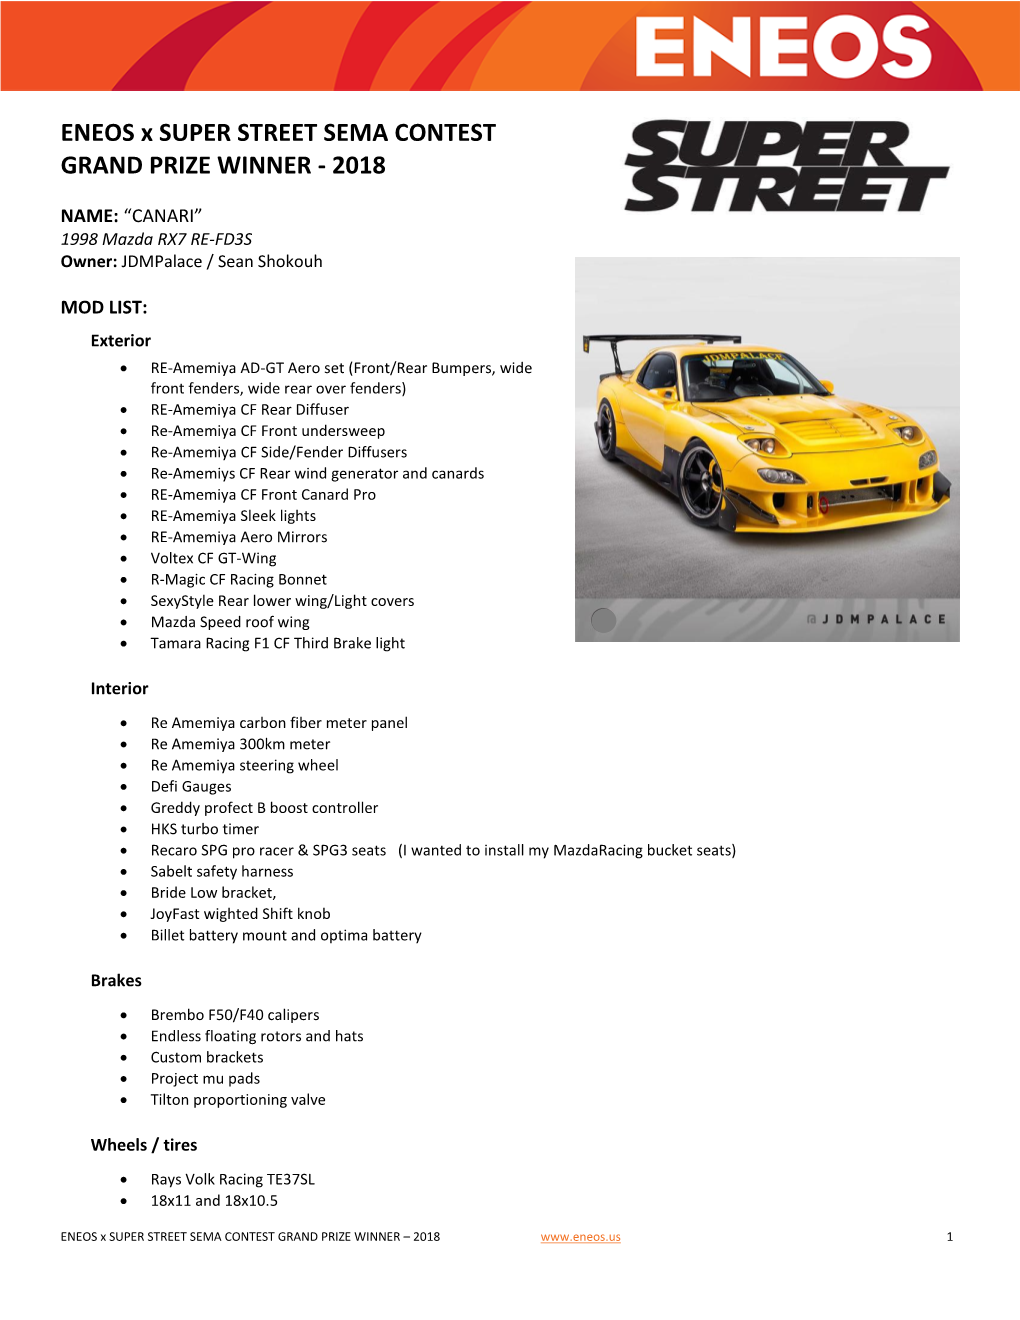 ENEOS X SUPER STREET SEMA CONTEST GRAND PRIZE WINNER - 2018